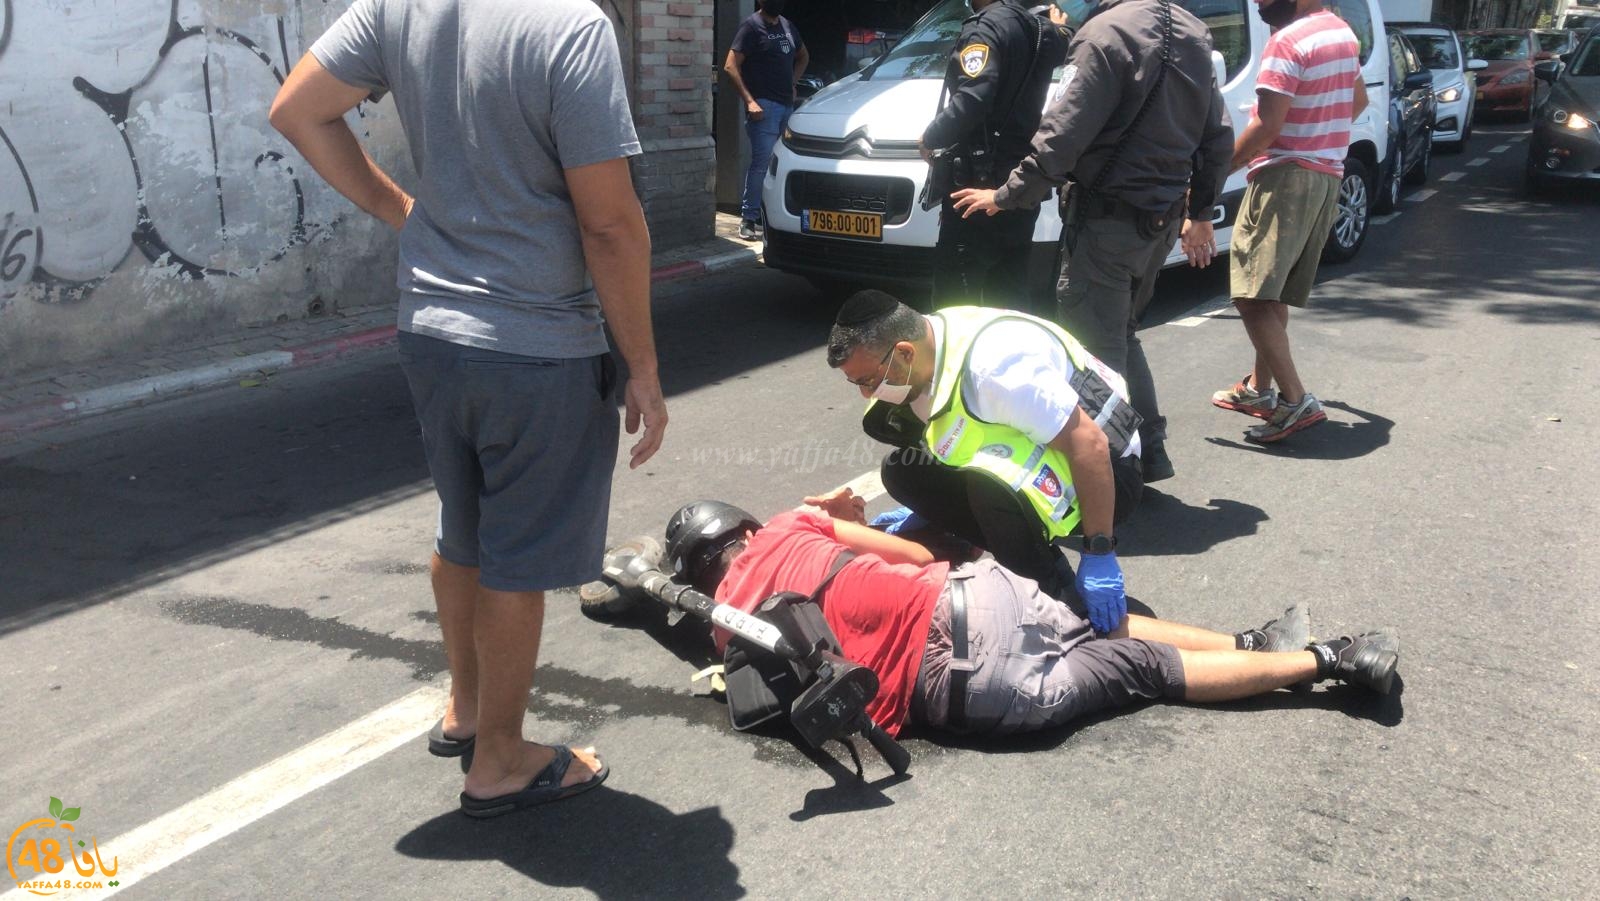  يافا: إصابة طفيفة لراكب دراجة كهربائية بحادث ذاتي